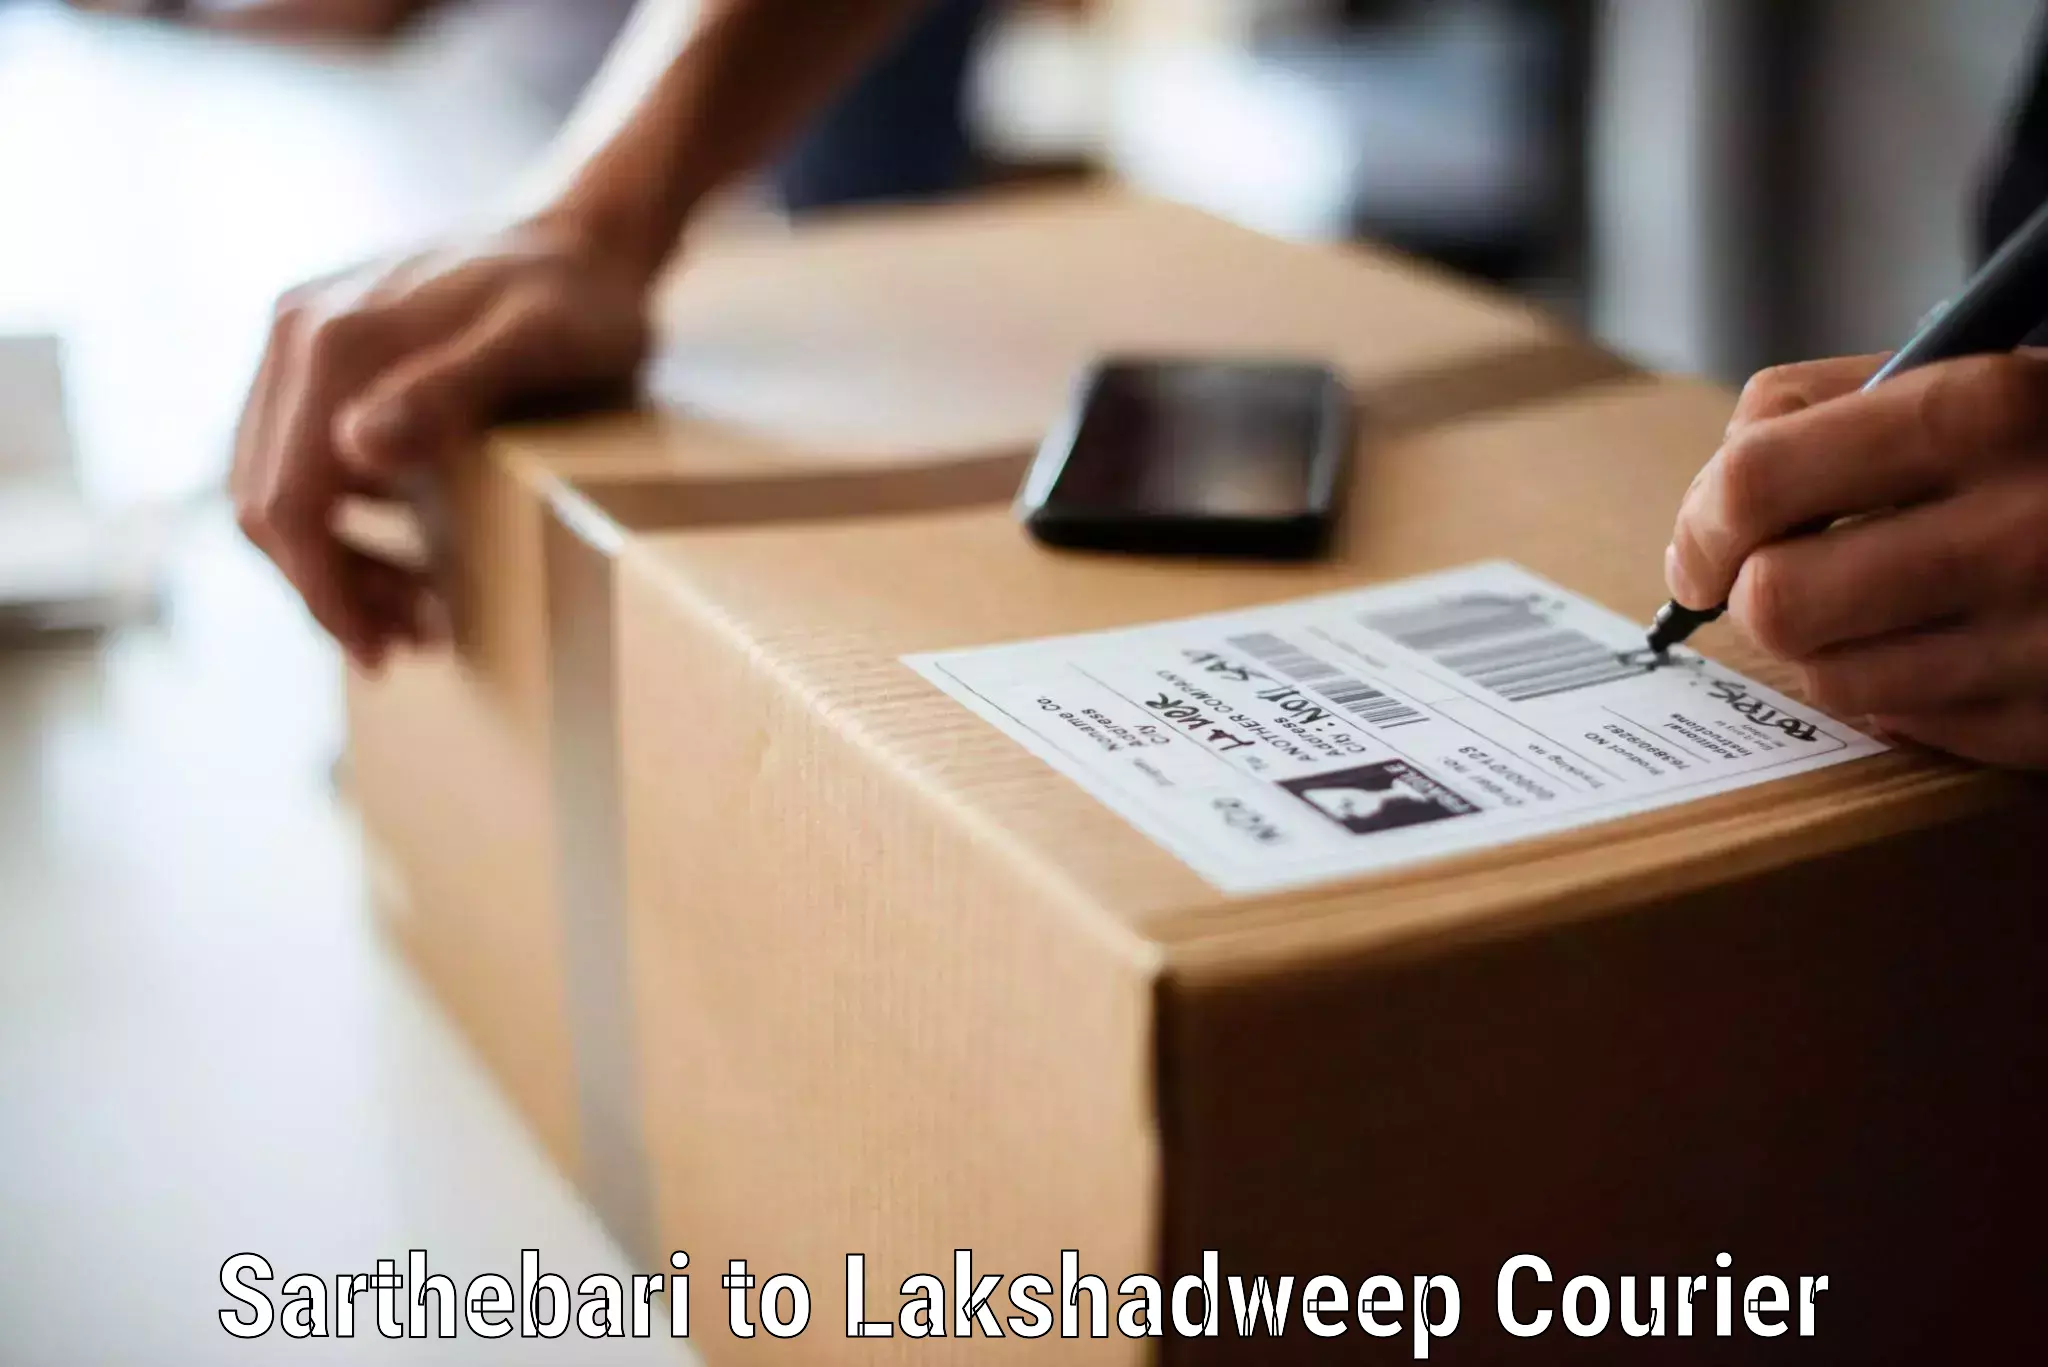 Efficient moving company Sarthebari to Lakshadweep